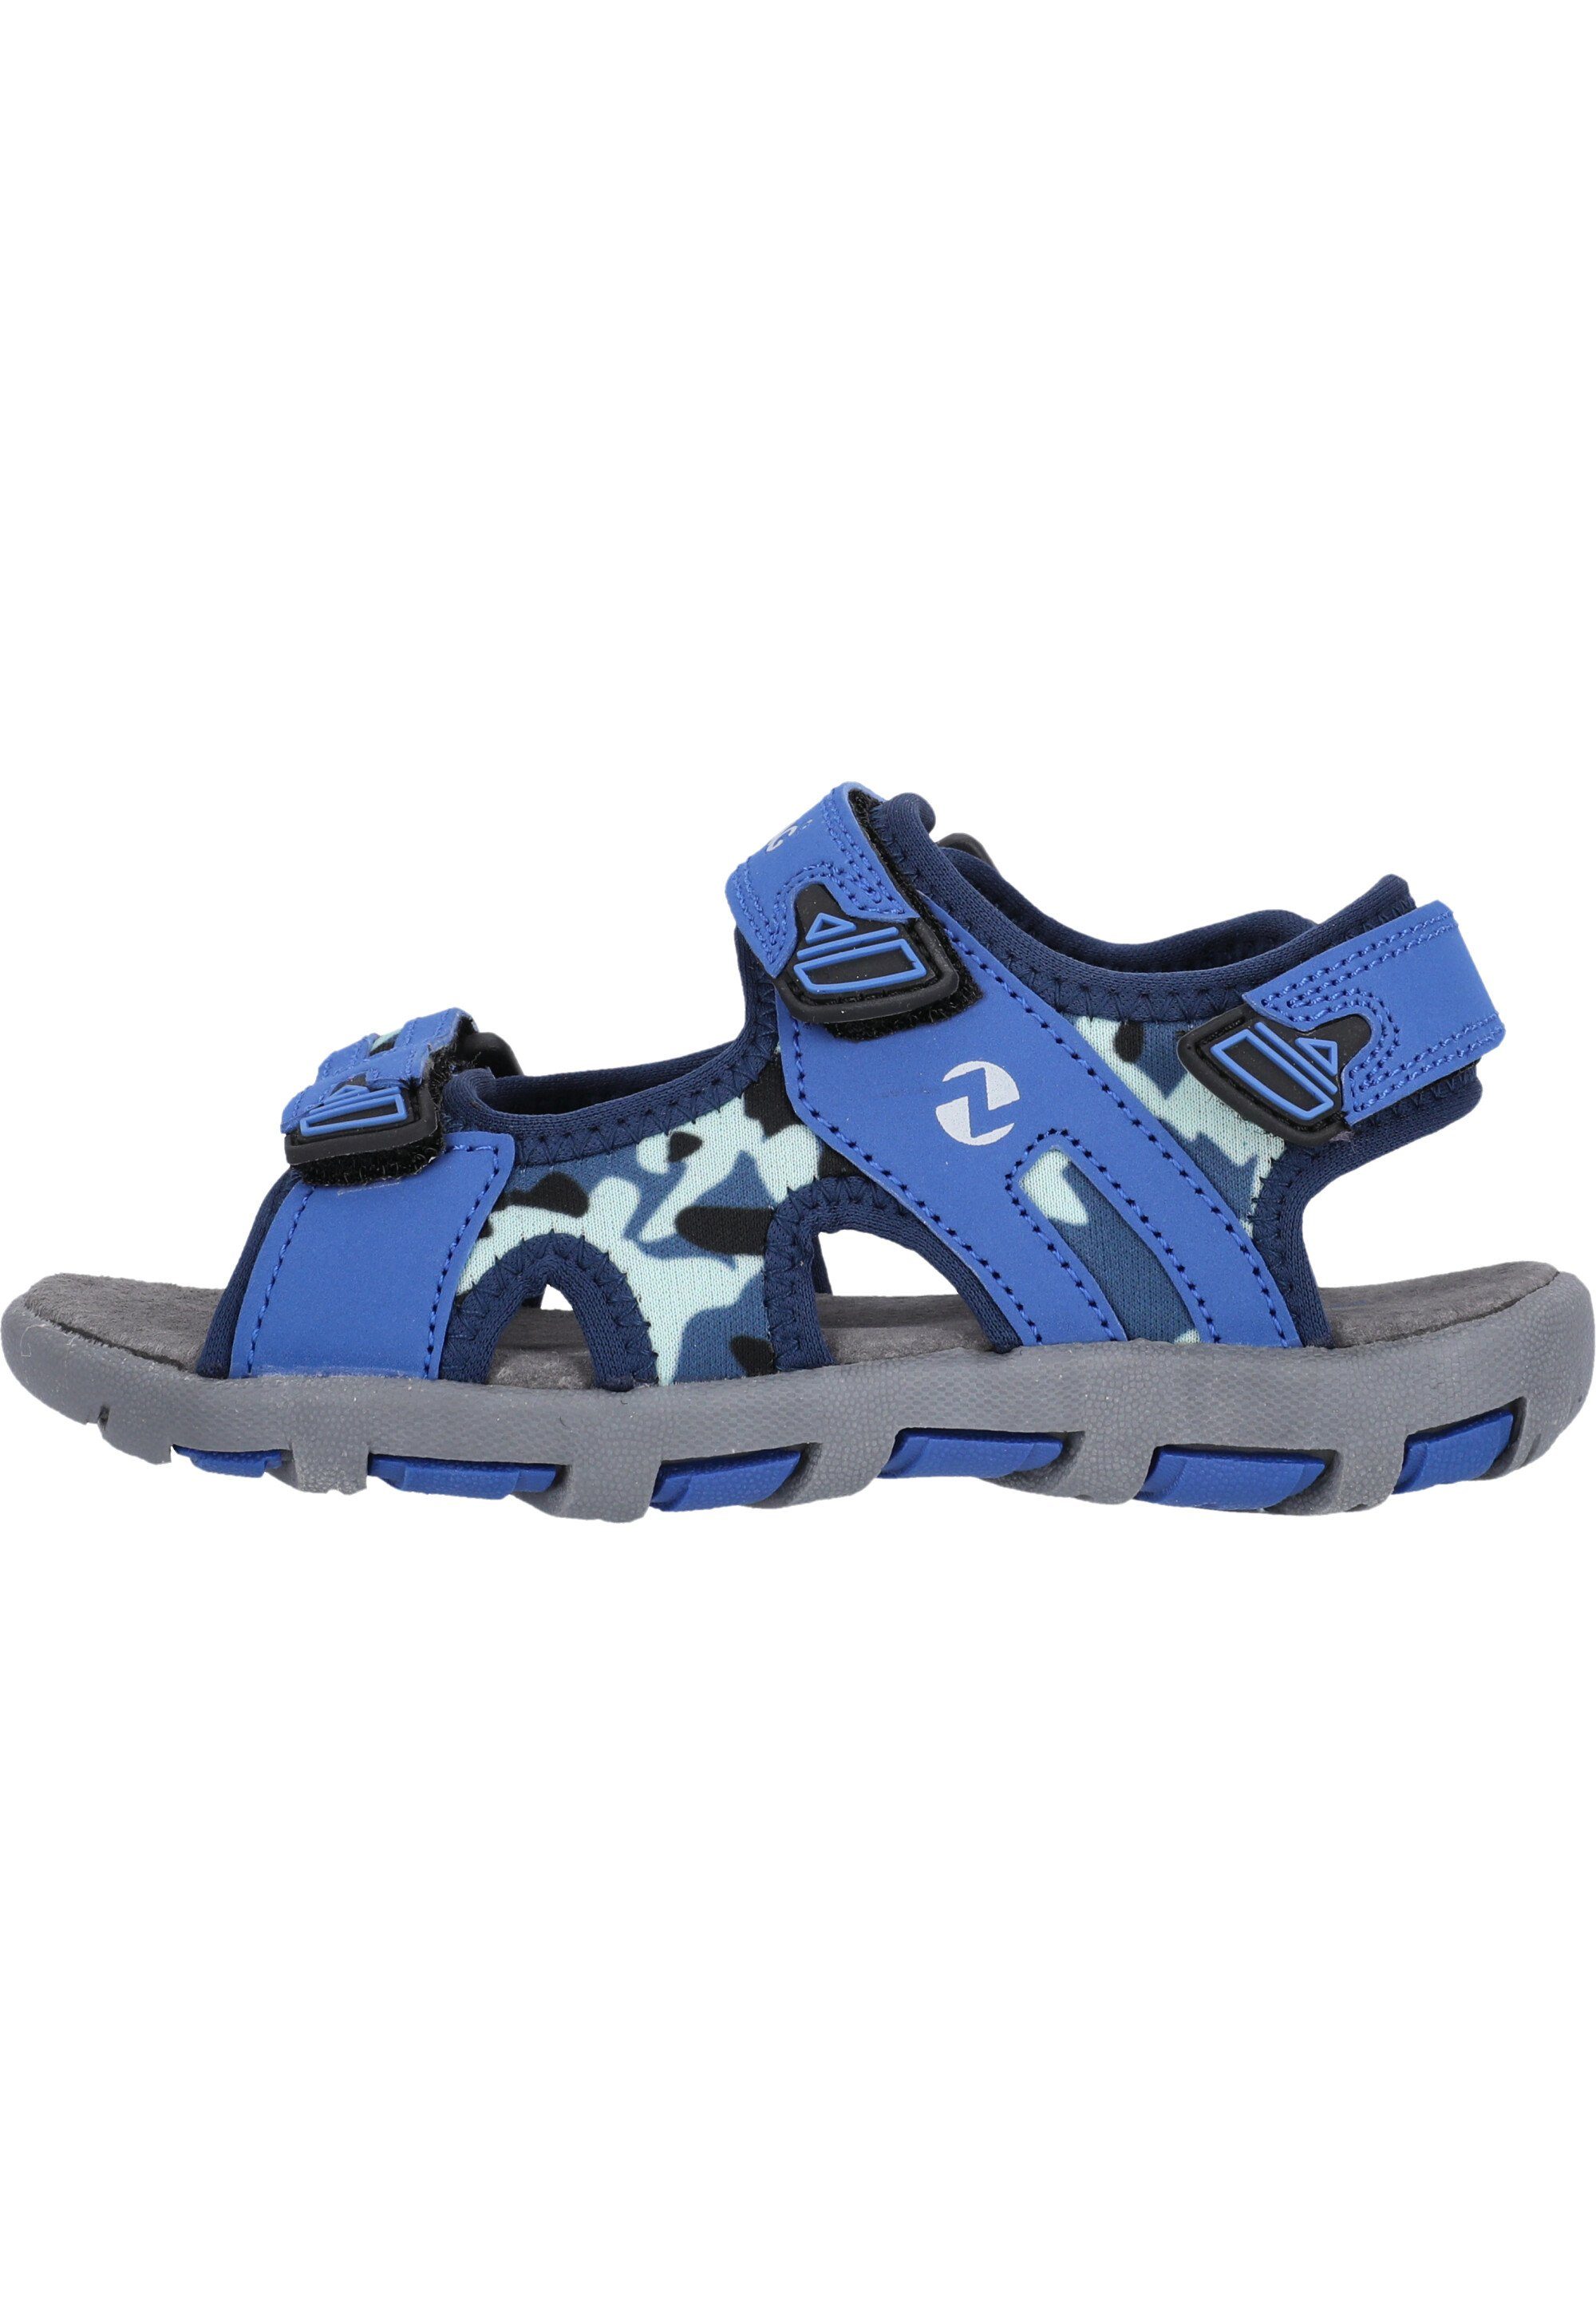 ZIGZAG Tanaka Sandale praktischem blau-blau mit Klettverschluss